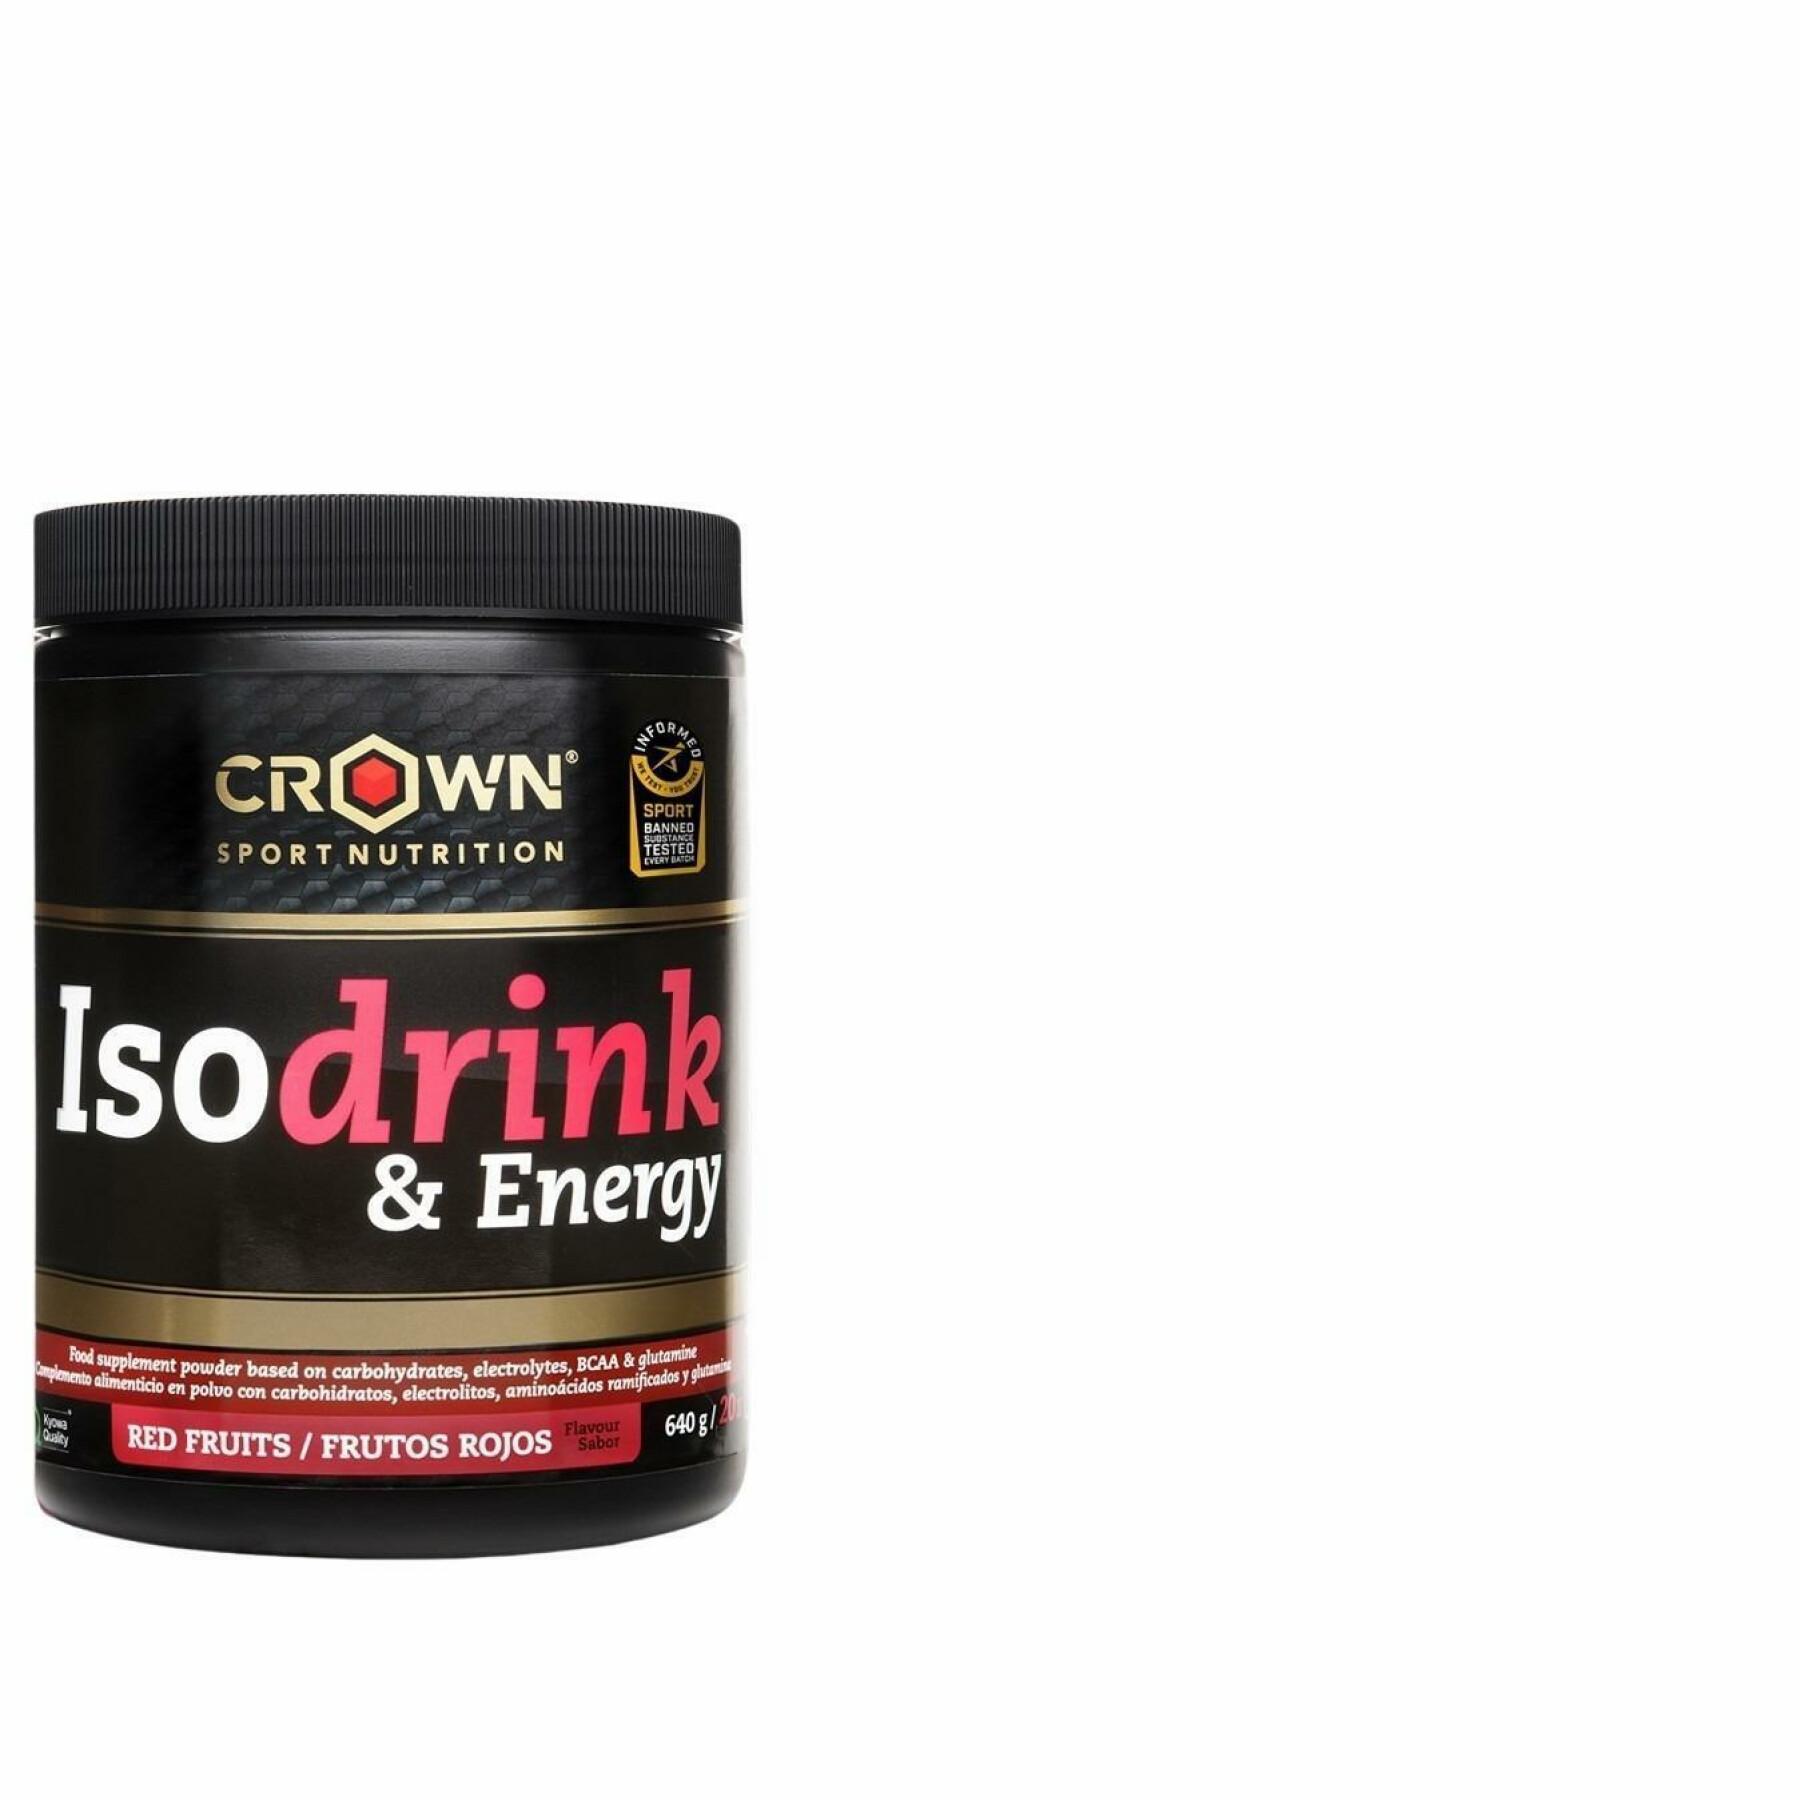 Energy drink Crown Sport Nutrition Isodrink & Energy informed sport - fruits rouges - 640 g